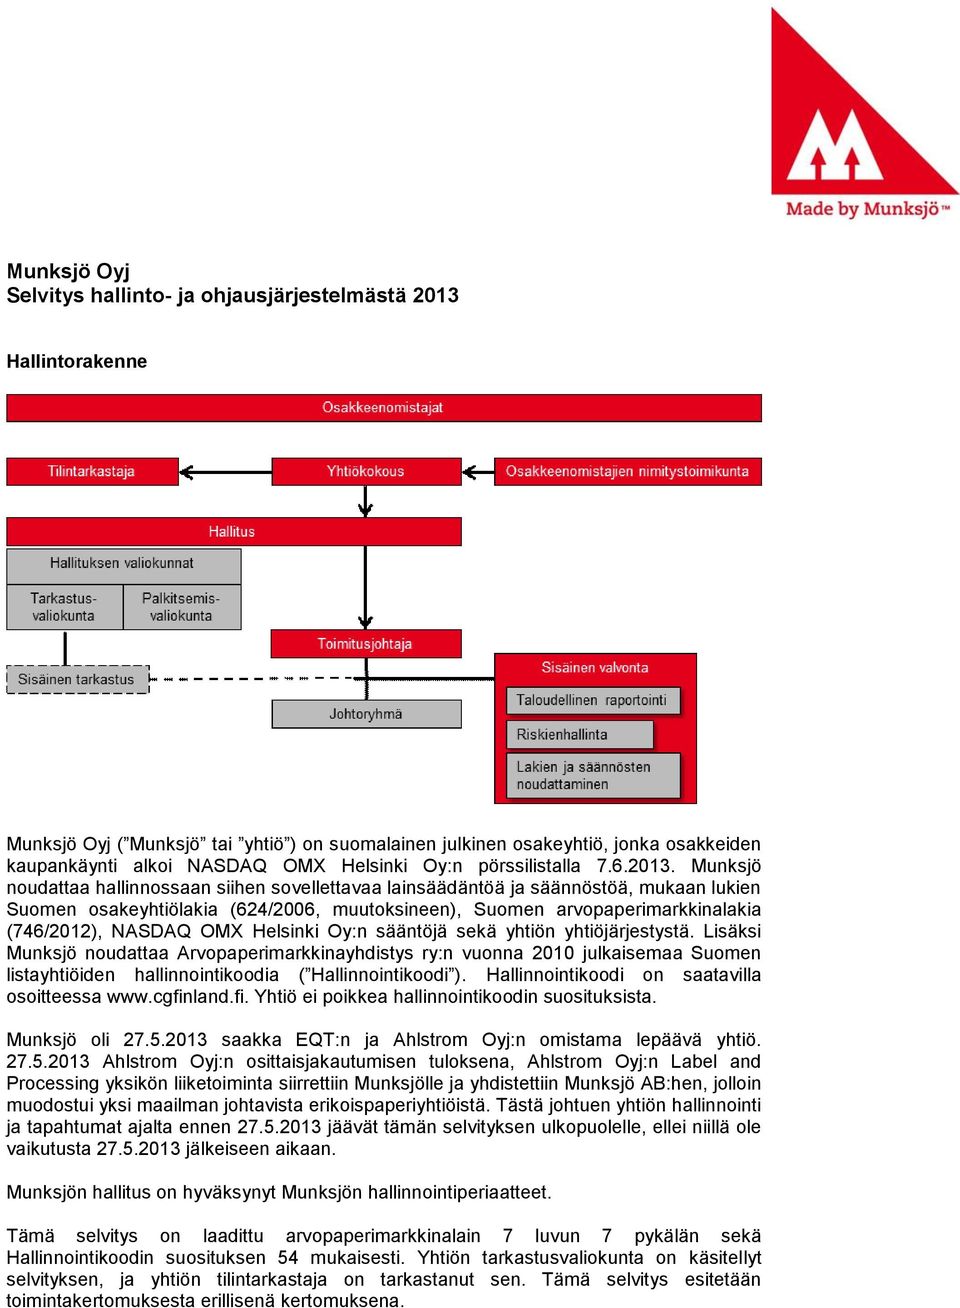 Munksjö noudattaa hallinnossaan siihen sovellettavaa lainsäädäntöä ja säännöstöä, mukaan lukien Suomen osakeyhtiölakia (624/2006, muutoksineen), Suomen arvopaperimarkkinalakia (746/2012), NASDAQ OMX